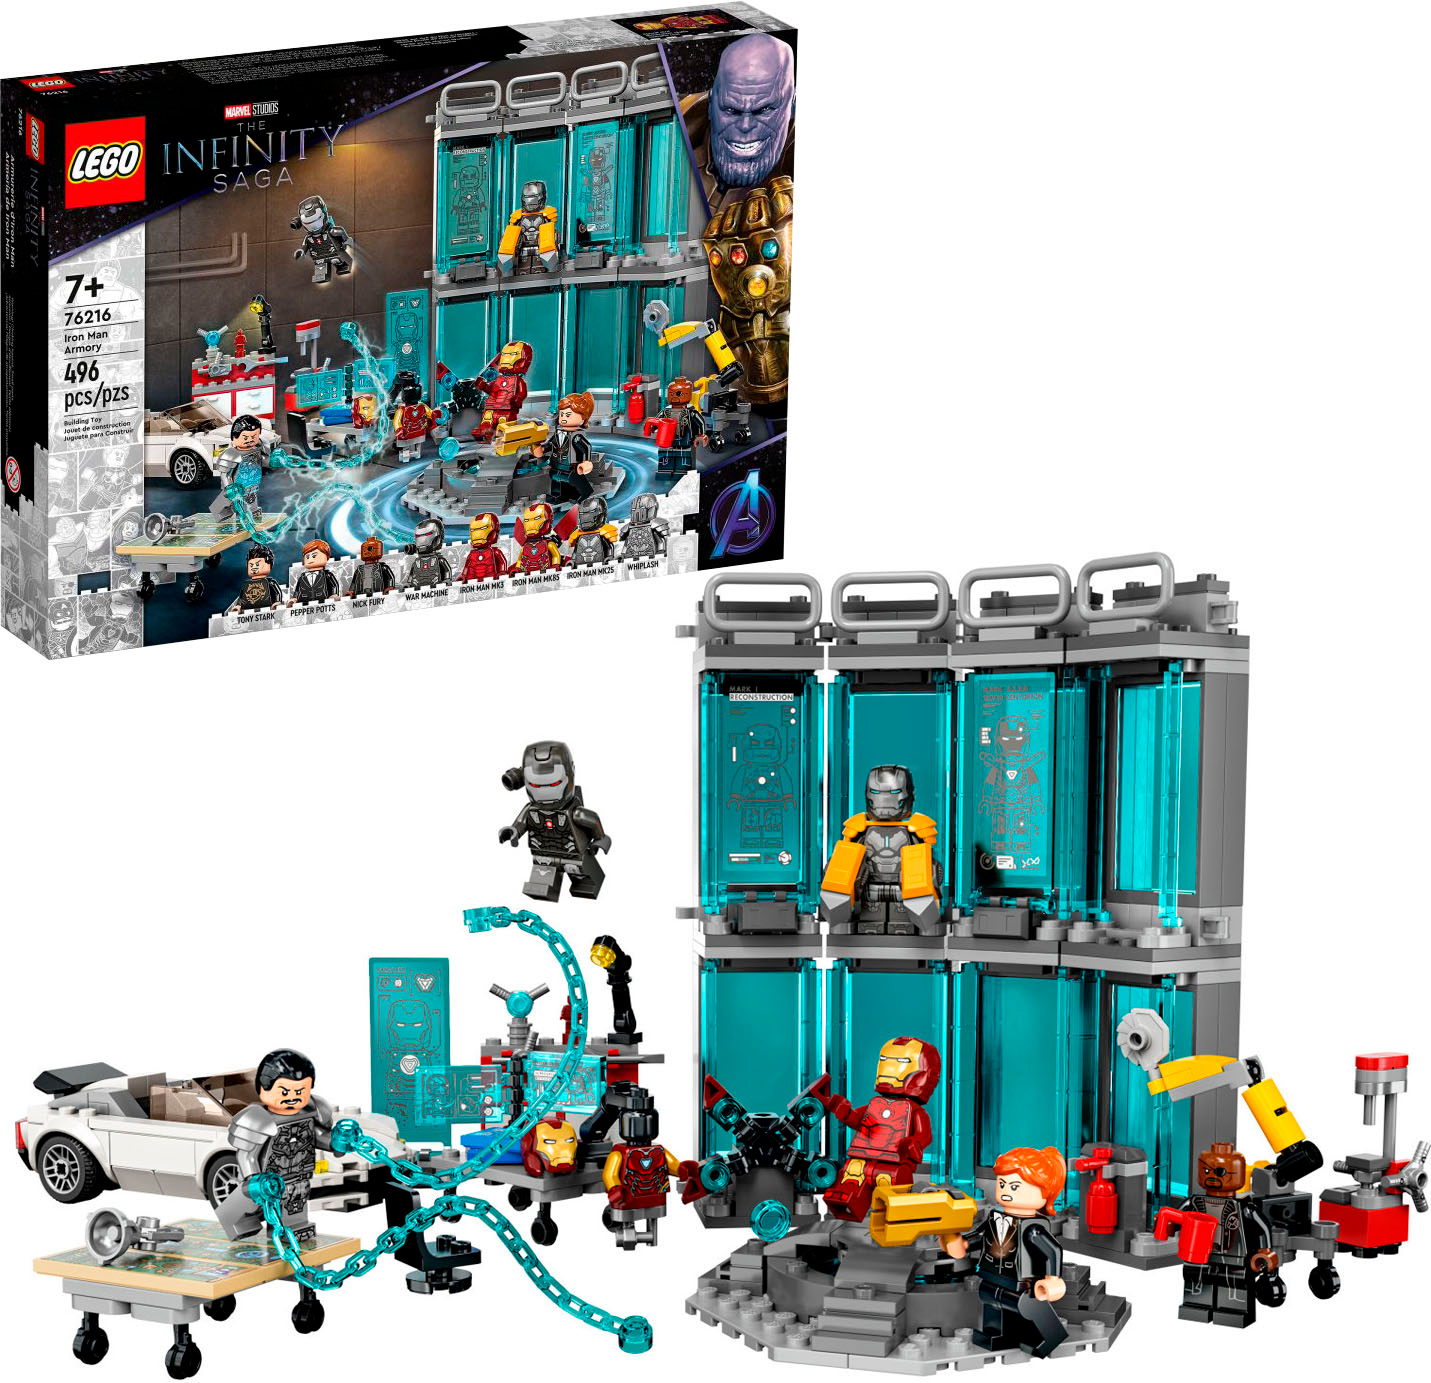 LEGO Iron Man 76216 6378956 - Buy